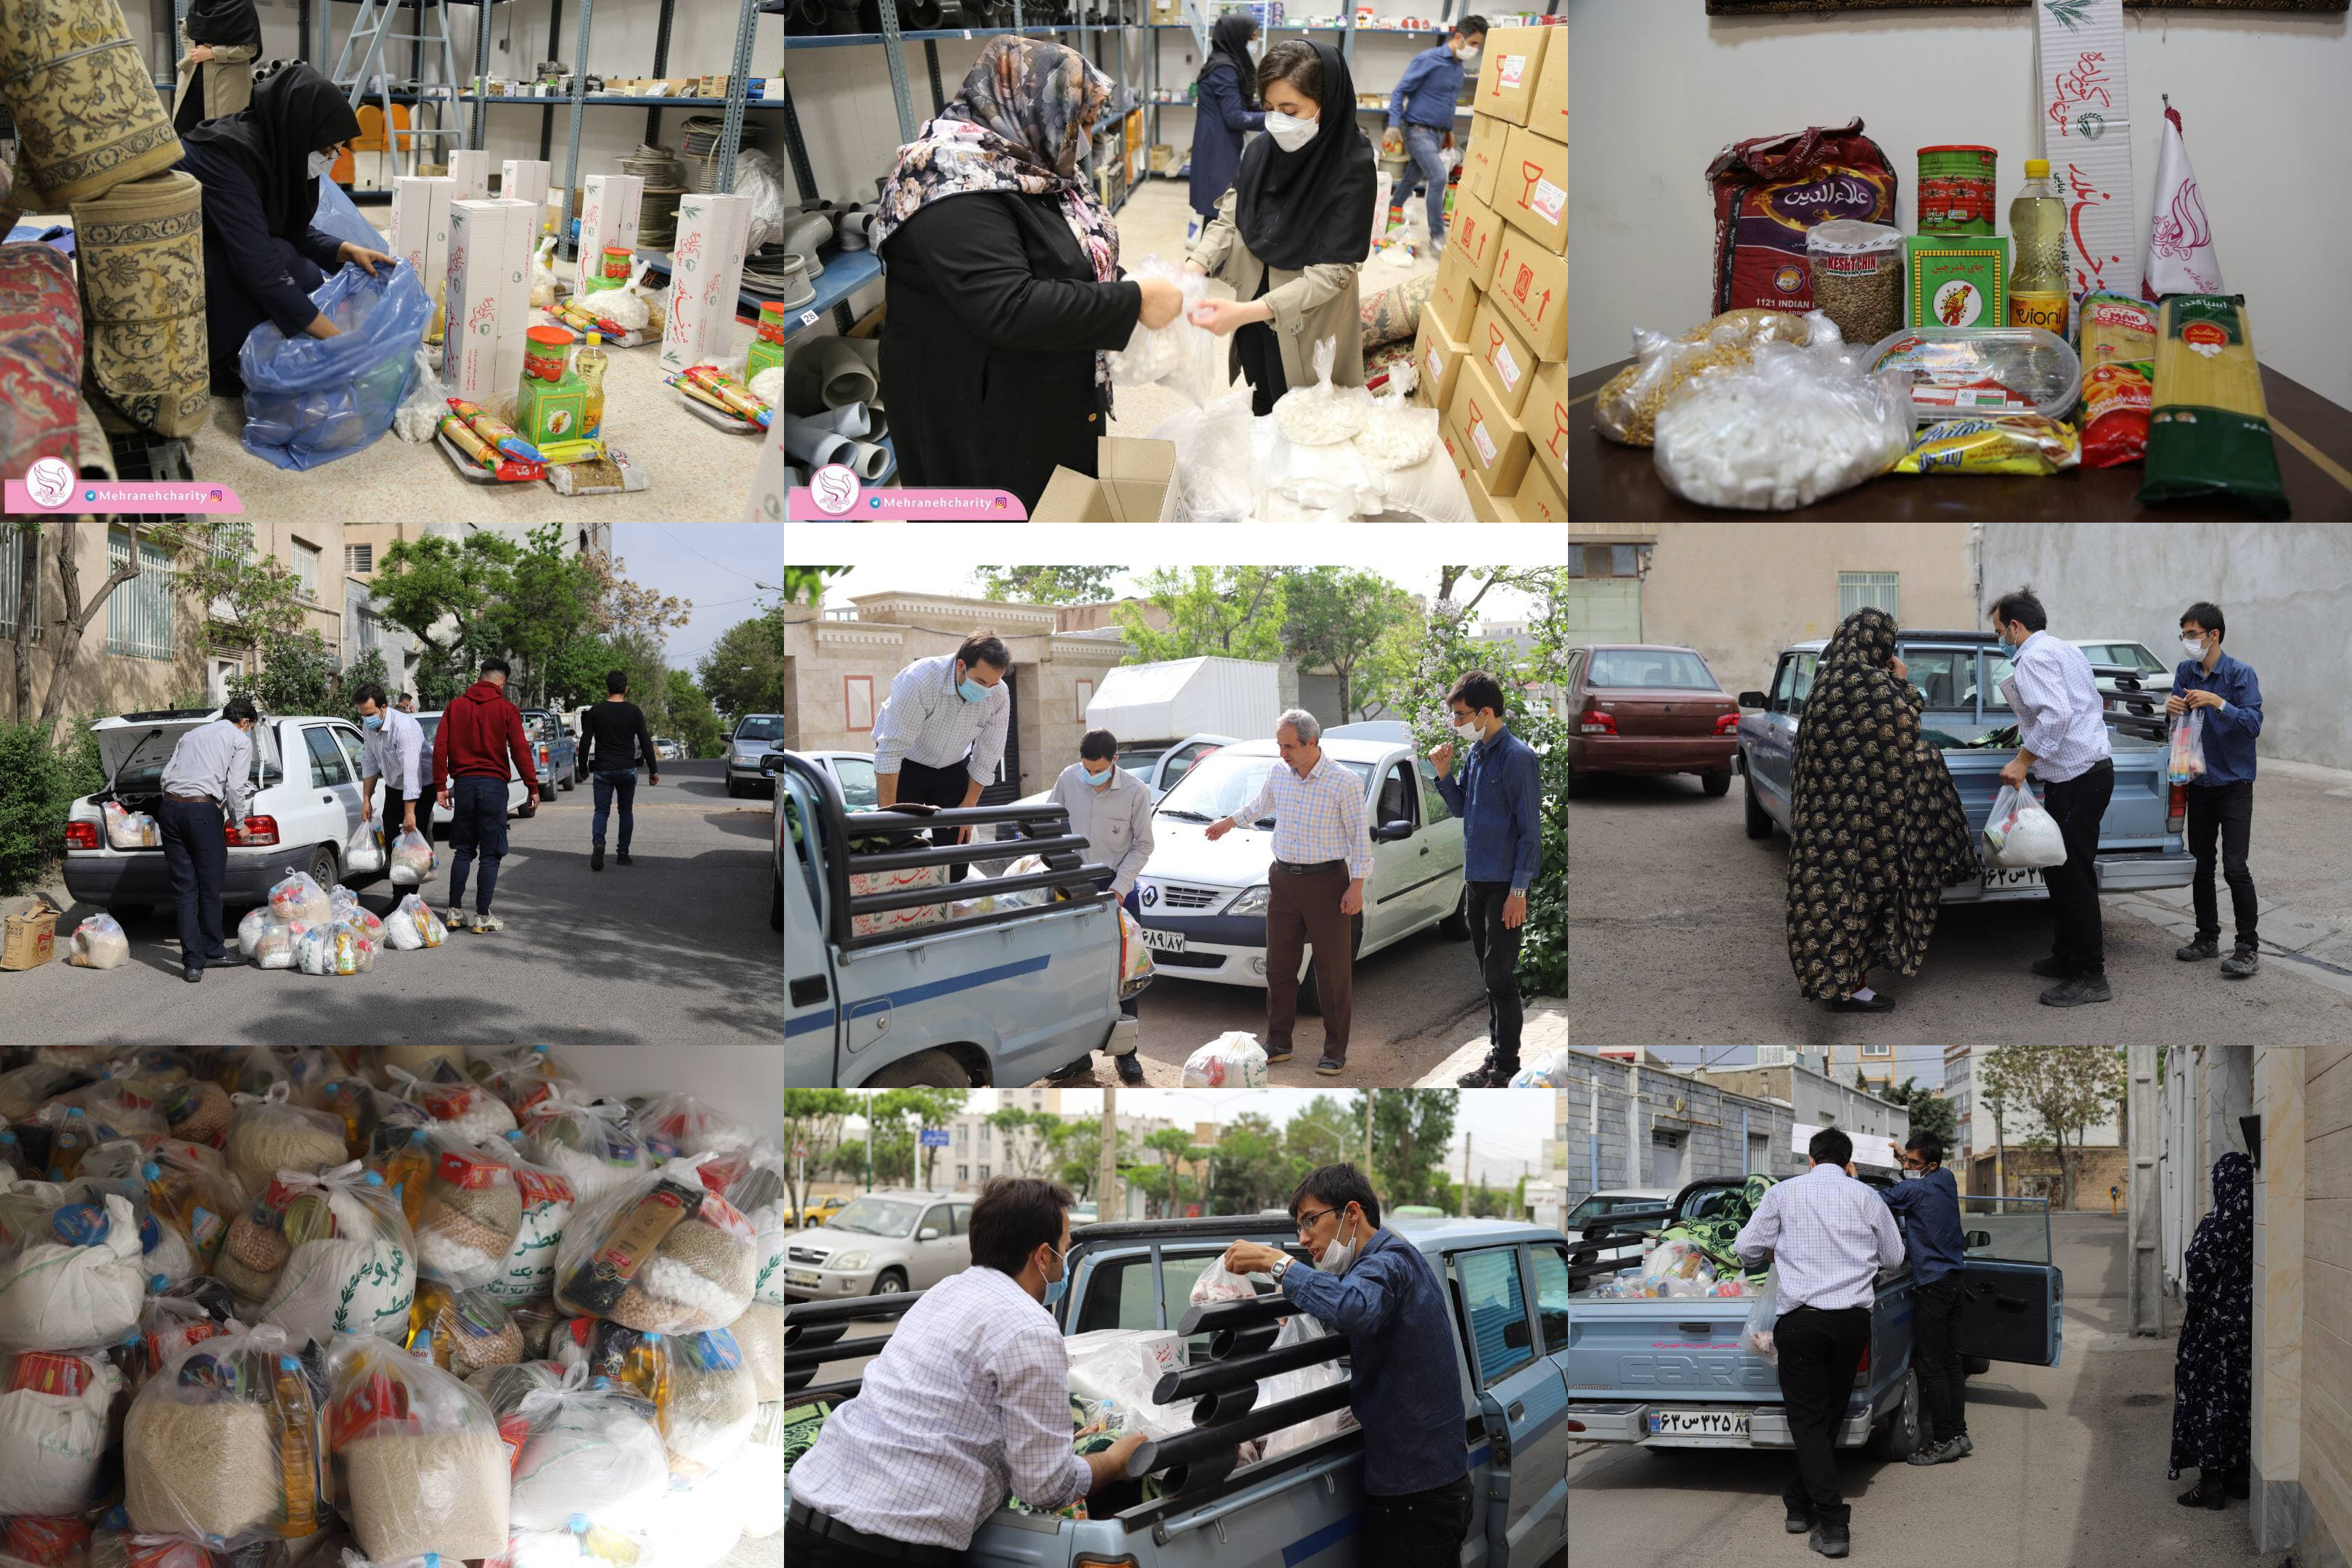 بسته بندی و توزیع ۲۷۰ سبد کالا برای بیماران توسط کمیته مددکاری انجمن خیریه #مهرانه